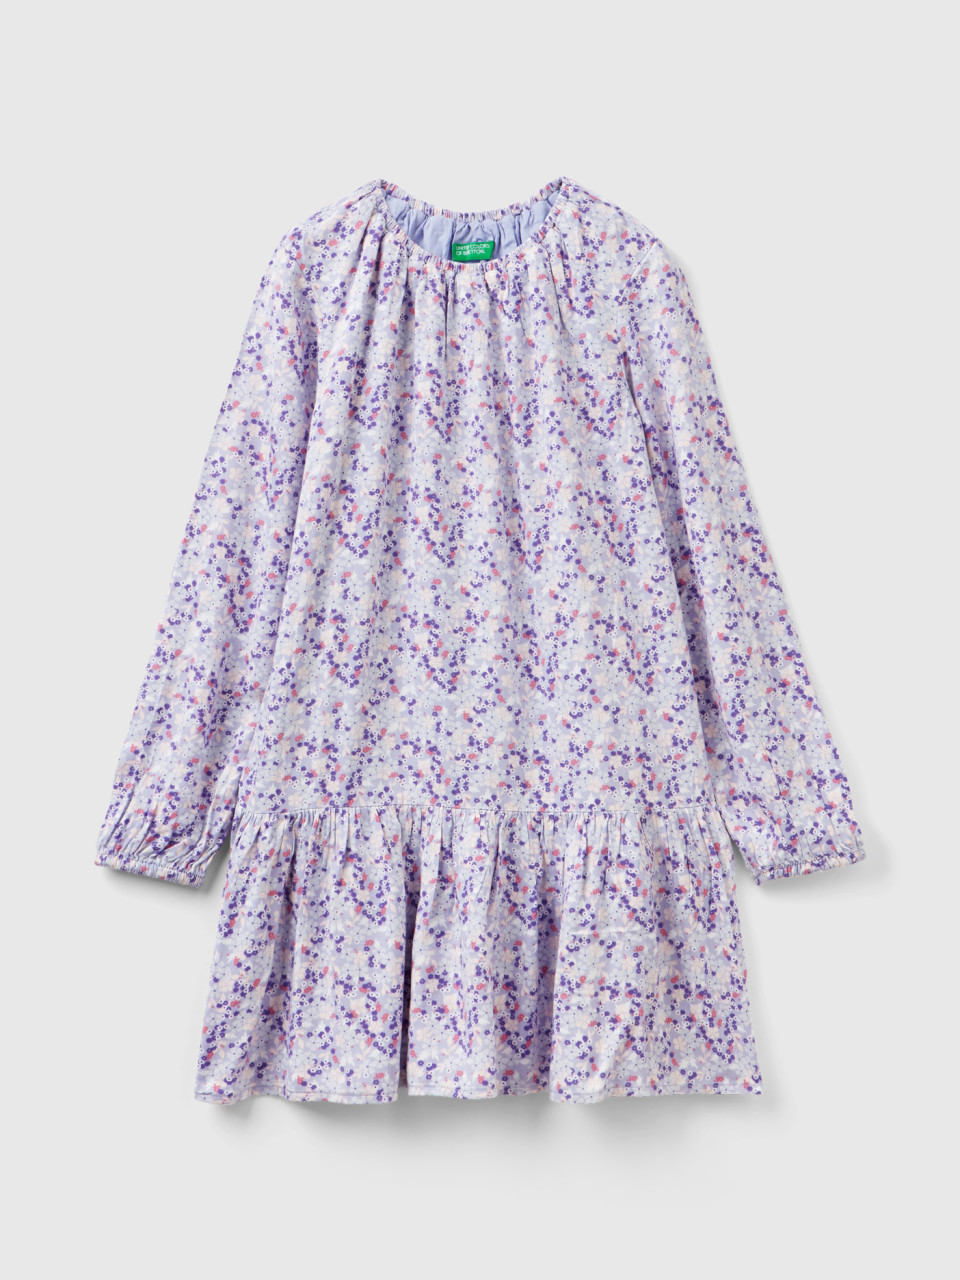 Benetton, Flowy Floral Dress, Multi-color, Kids